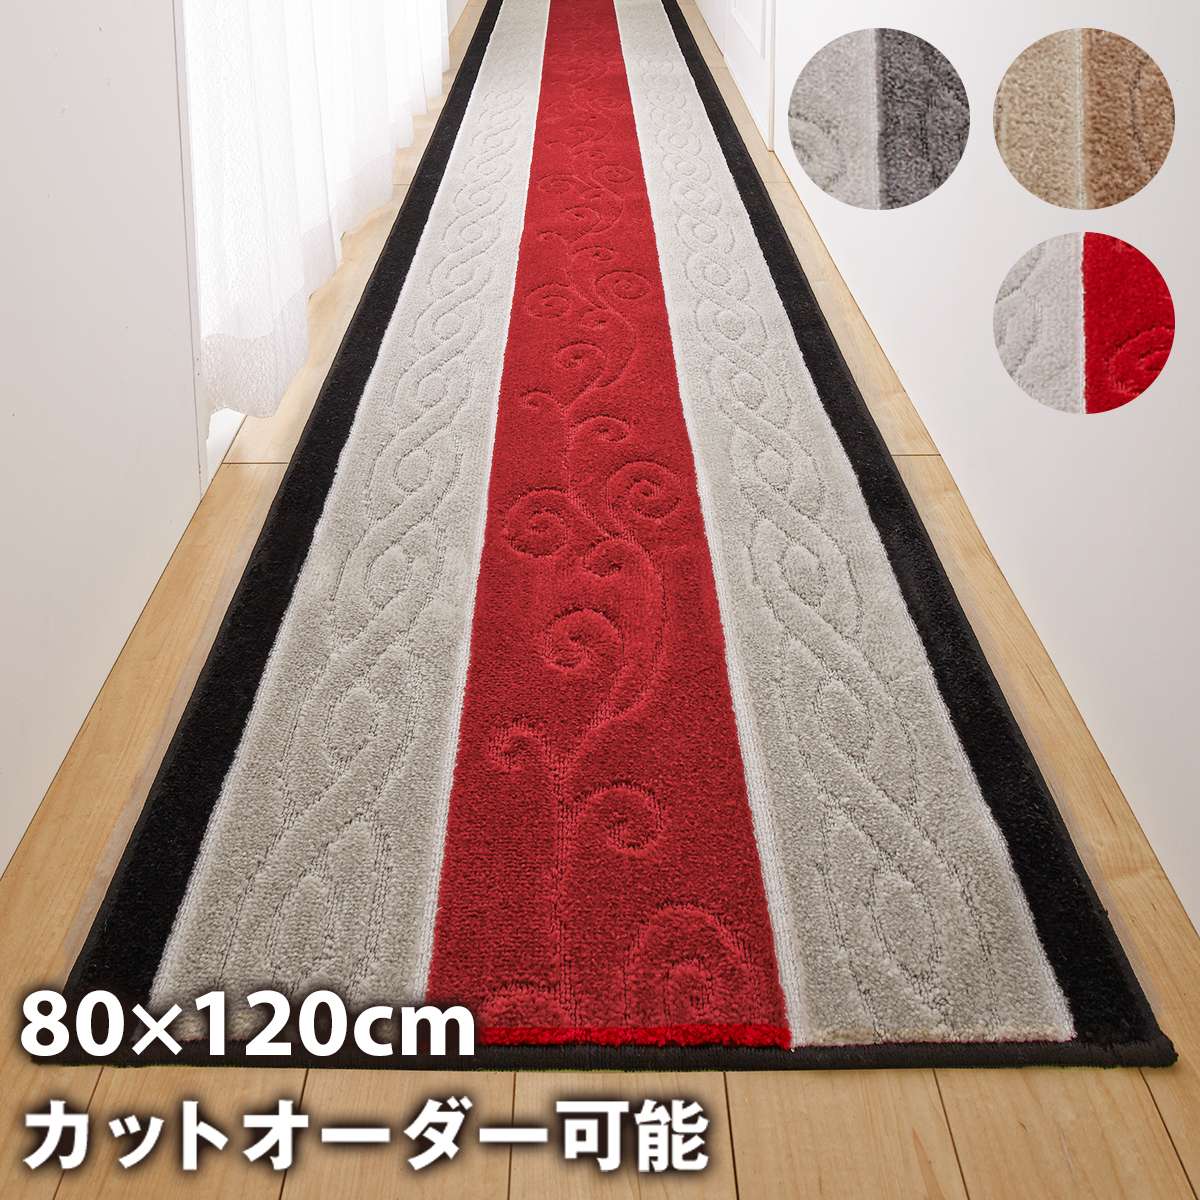 廊下マット 廊下敷き 80cm×240cm ステラ トルコ生地使用 日本製 滑り